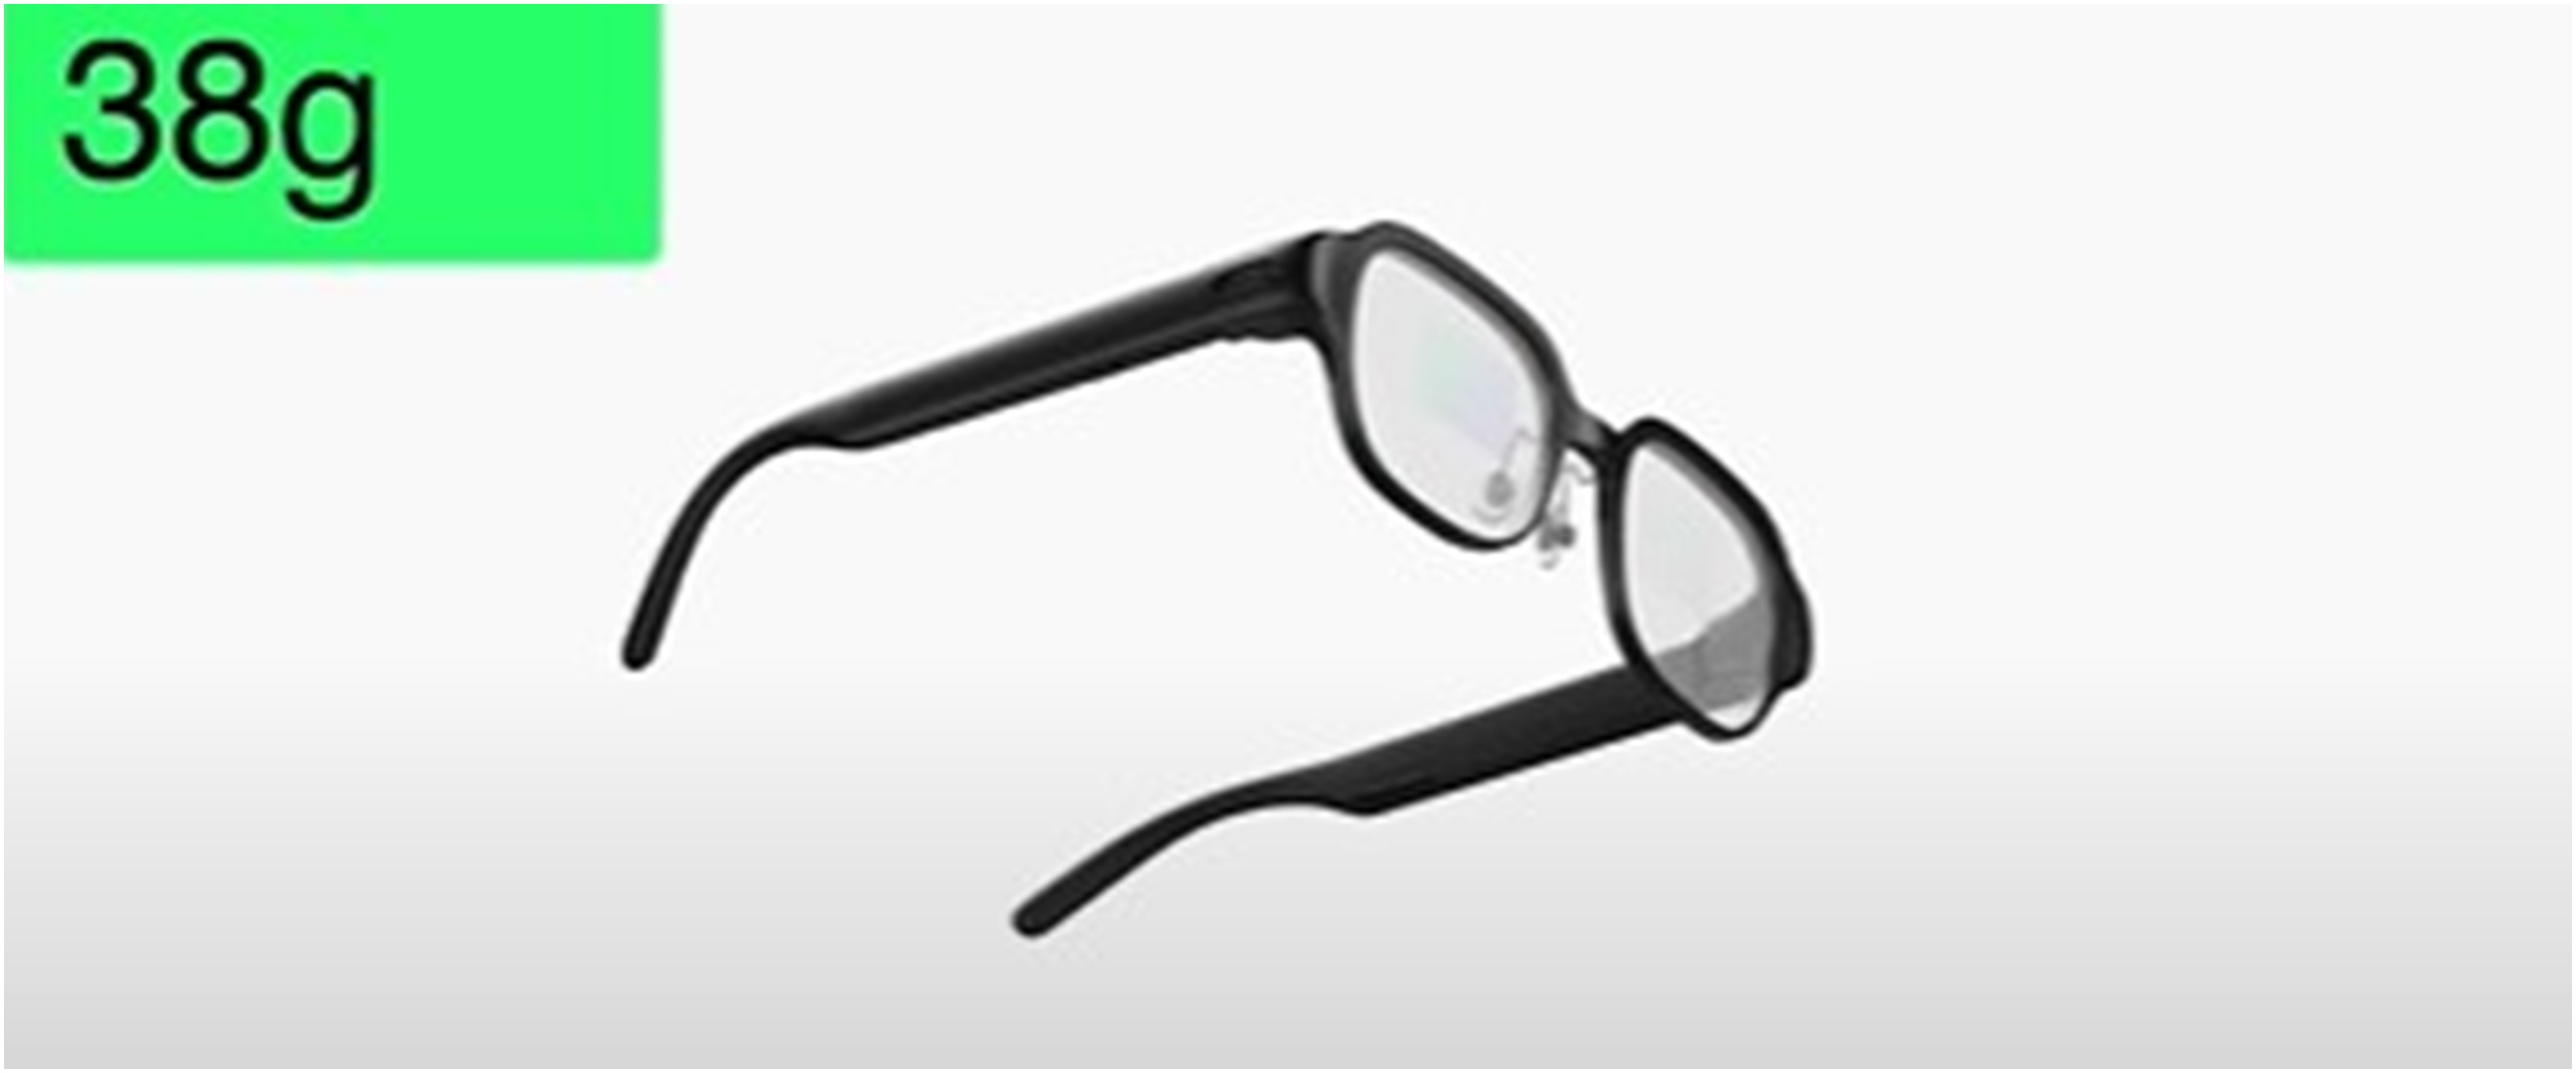 3 Gadget futuristis OPPO di INNO DAY 2022, ada kacamata bisa untuk telepon dan navigasi